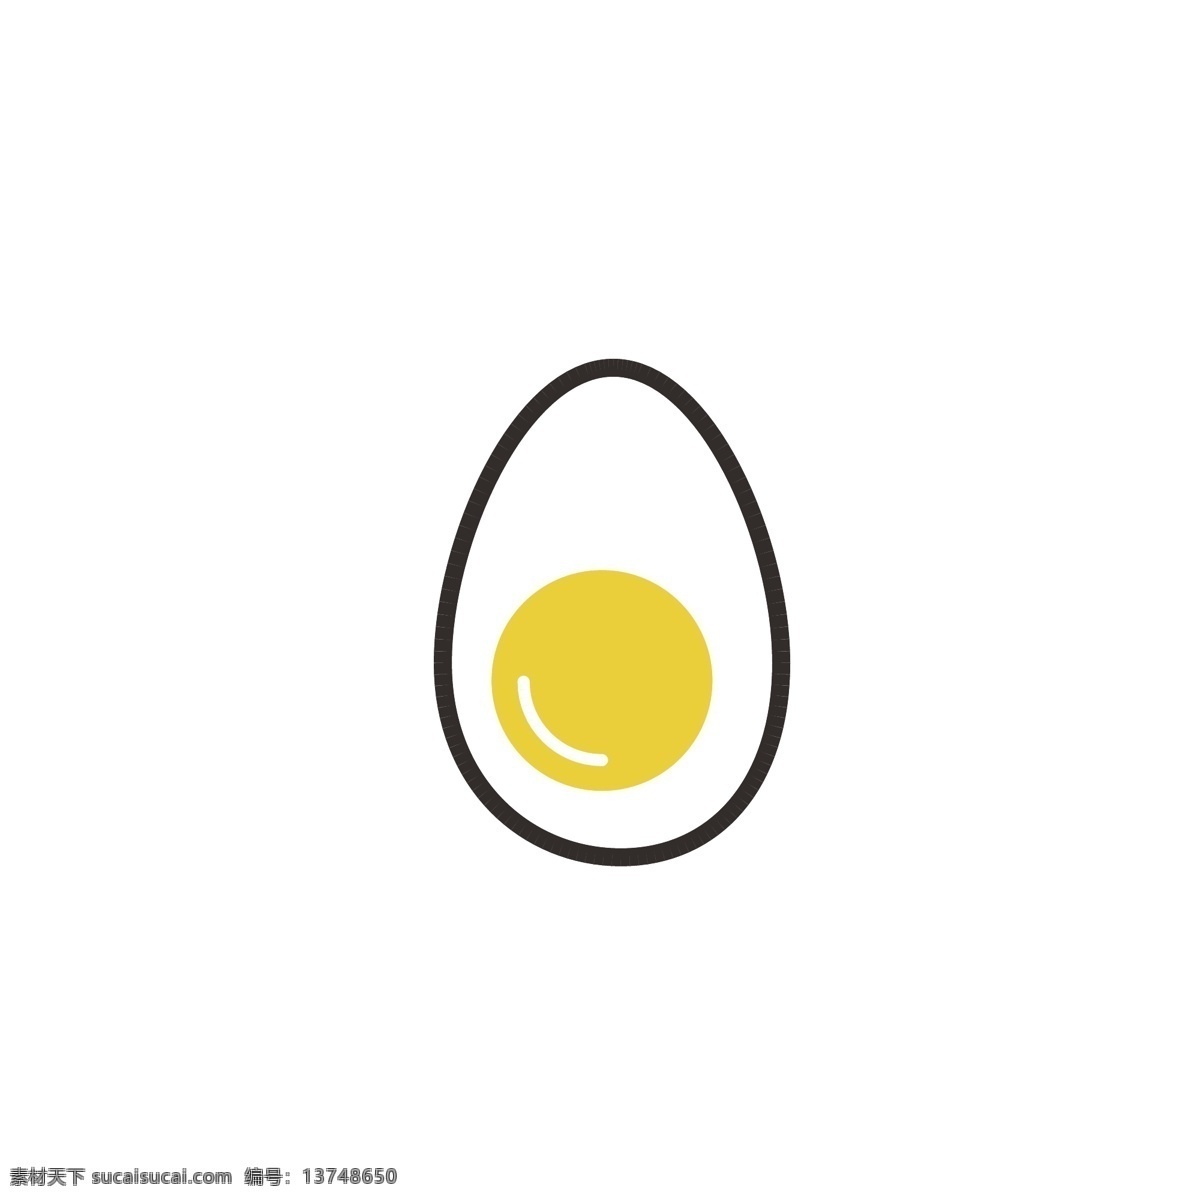 鸡蛋 蛋 蛋壳 蛋黄 蛋清